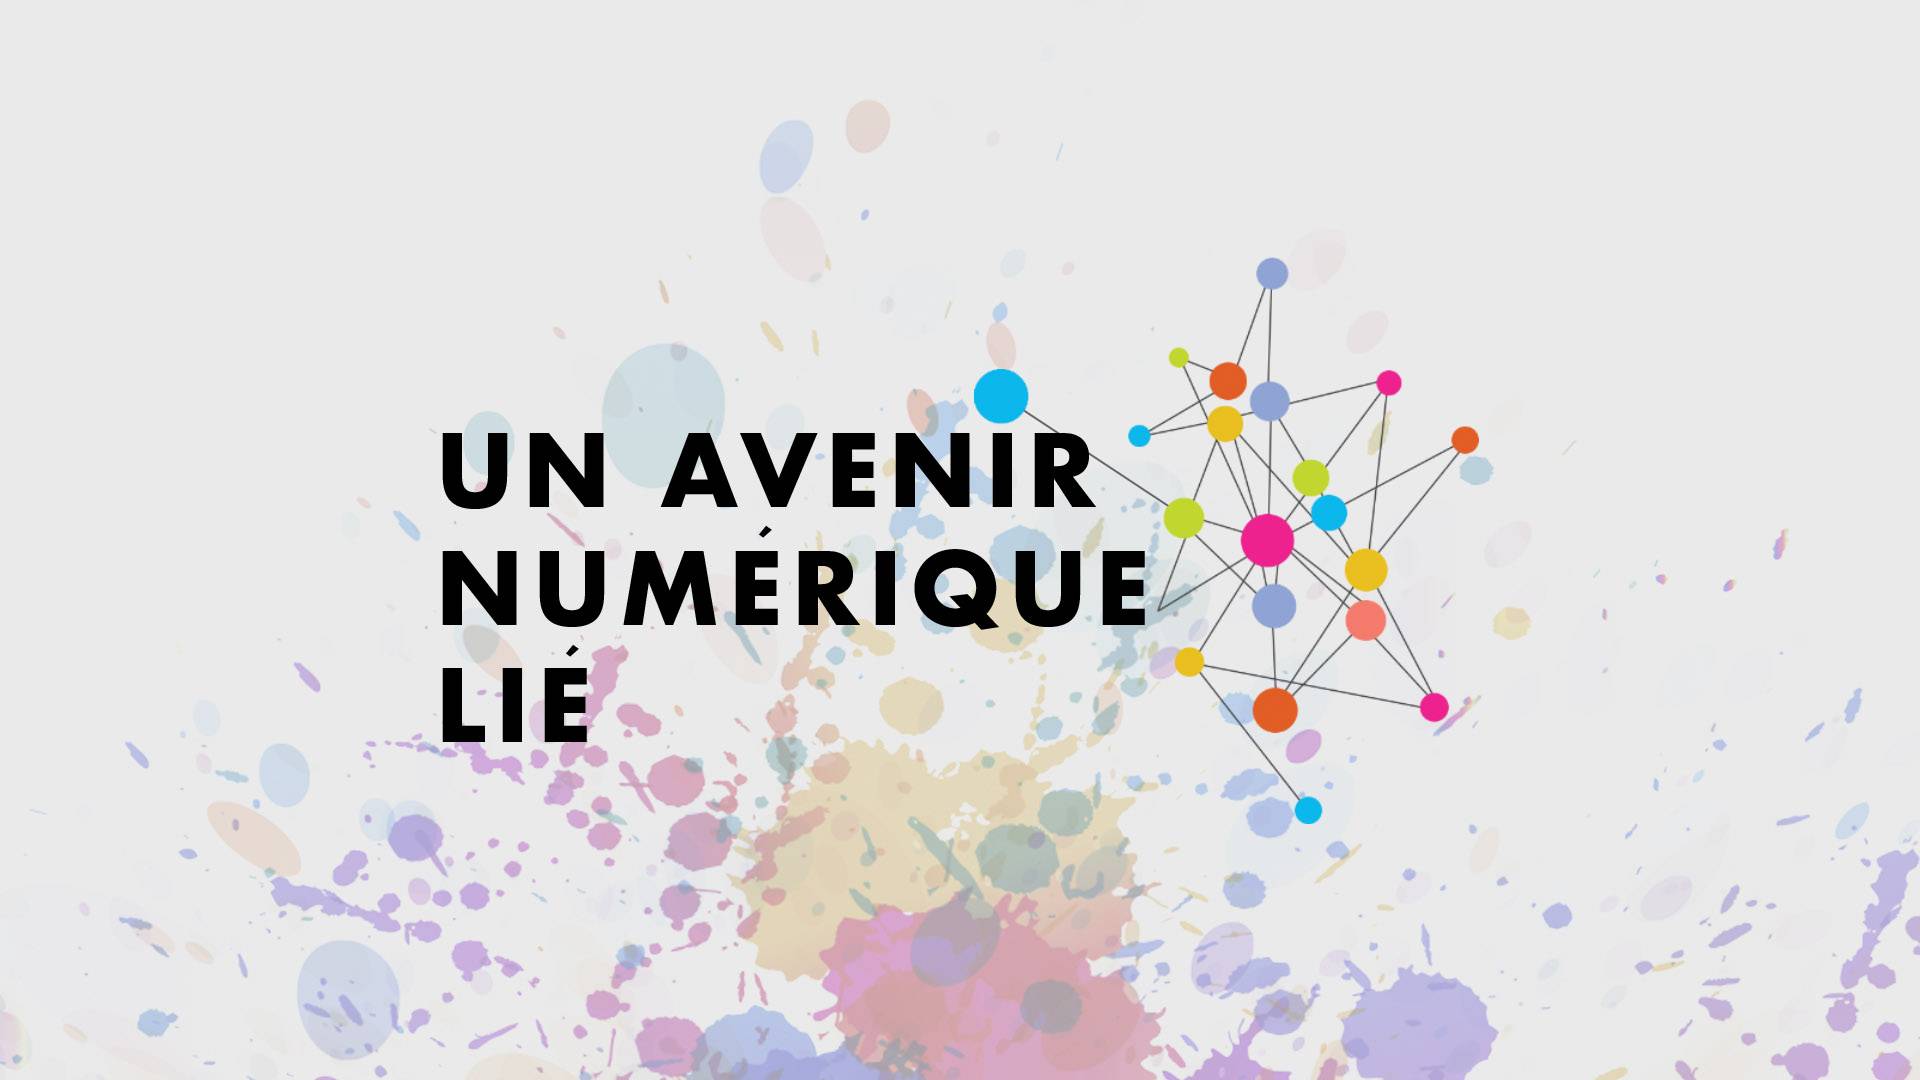 Un Avenir Numérique Lié - Ateliers pratiques Wikidata